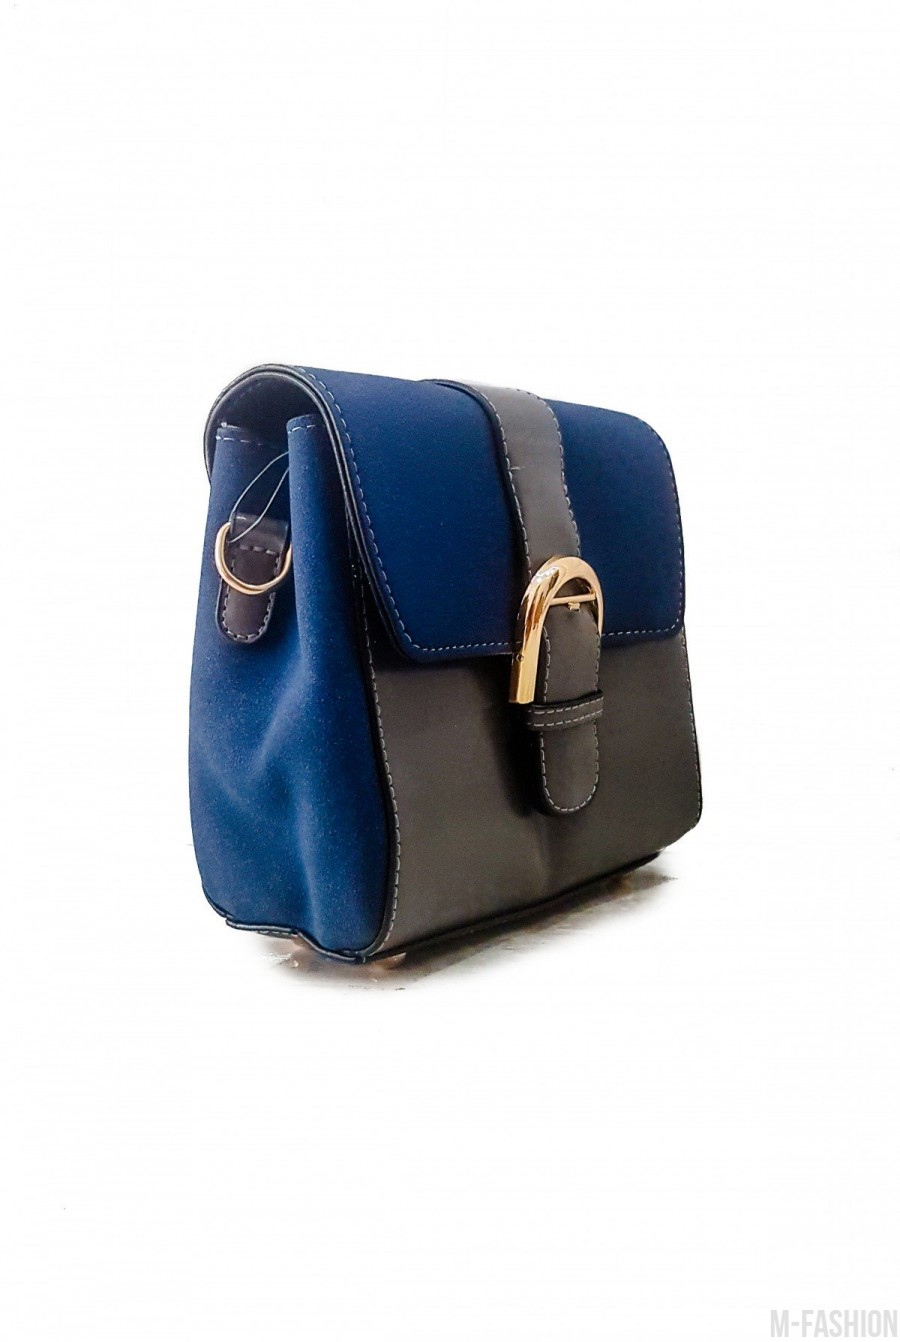 Синяя с серым лаконичная комбинированная женская сумочка- Фото 2